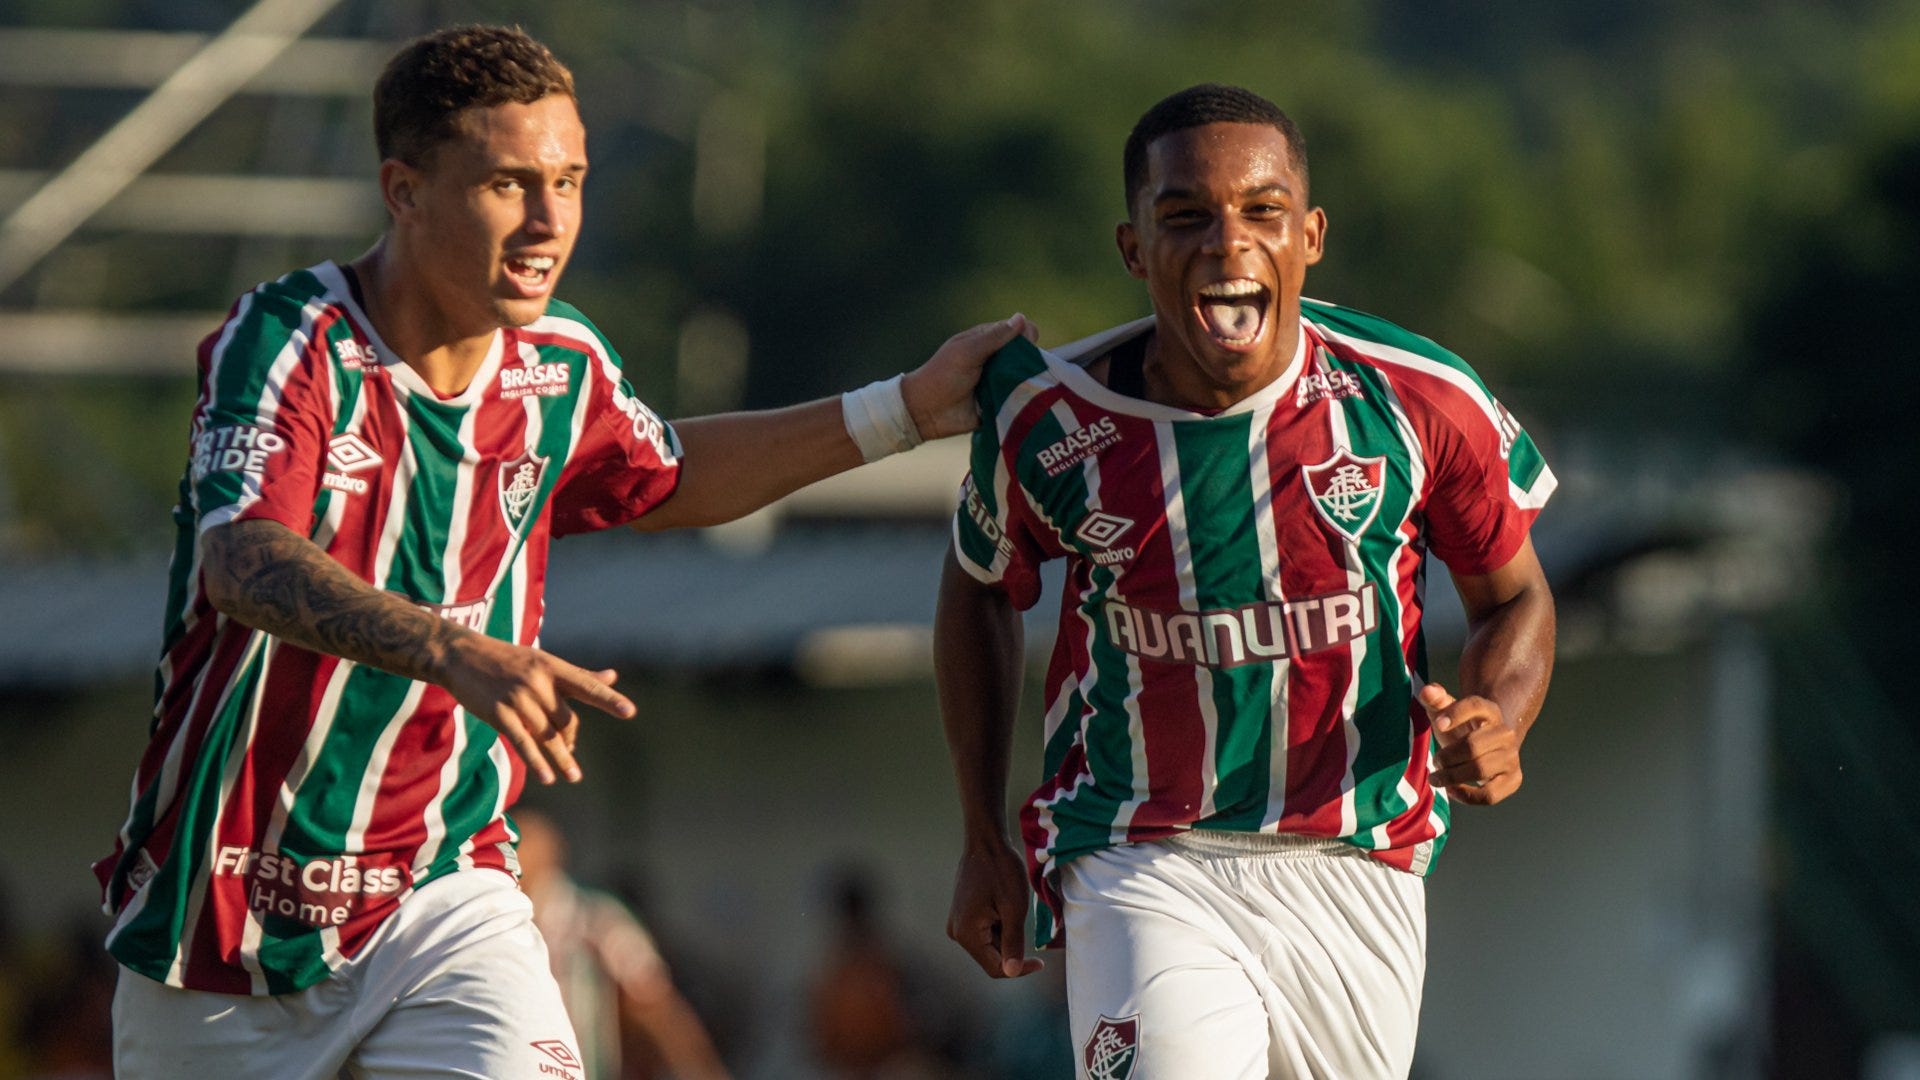 Copa do Brasil Sub-20: Assista ao vivo e de graça ao jogo Fluminense x  Cruzeiro